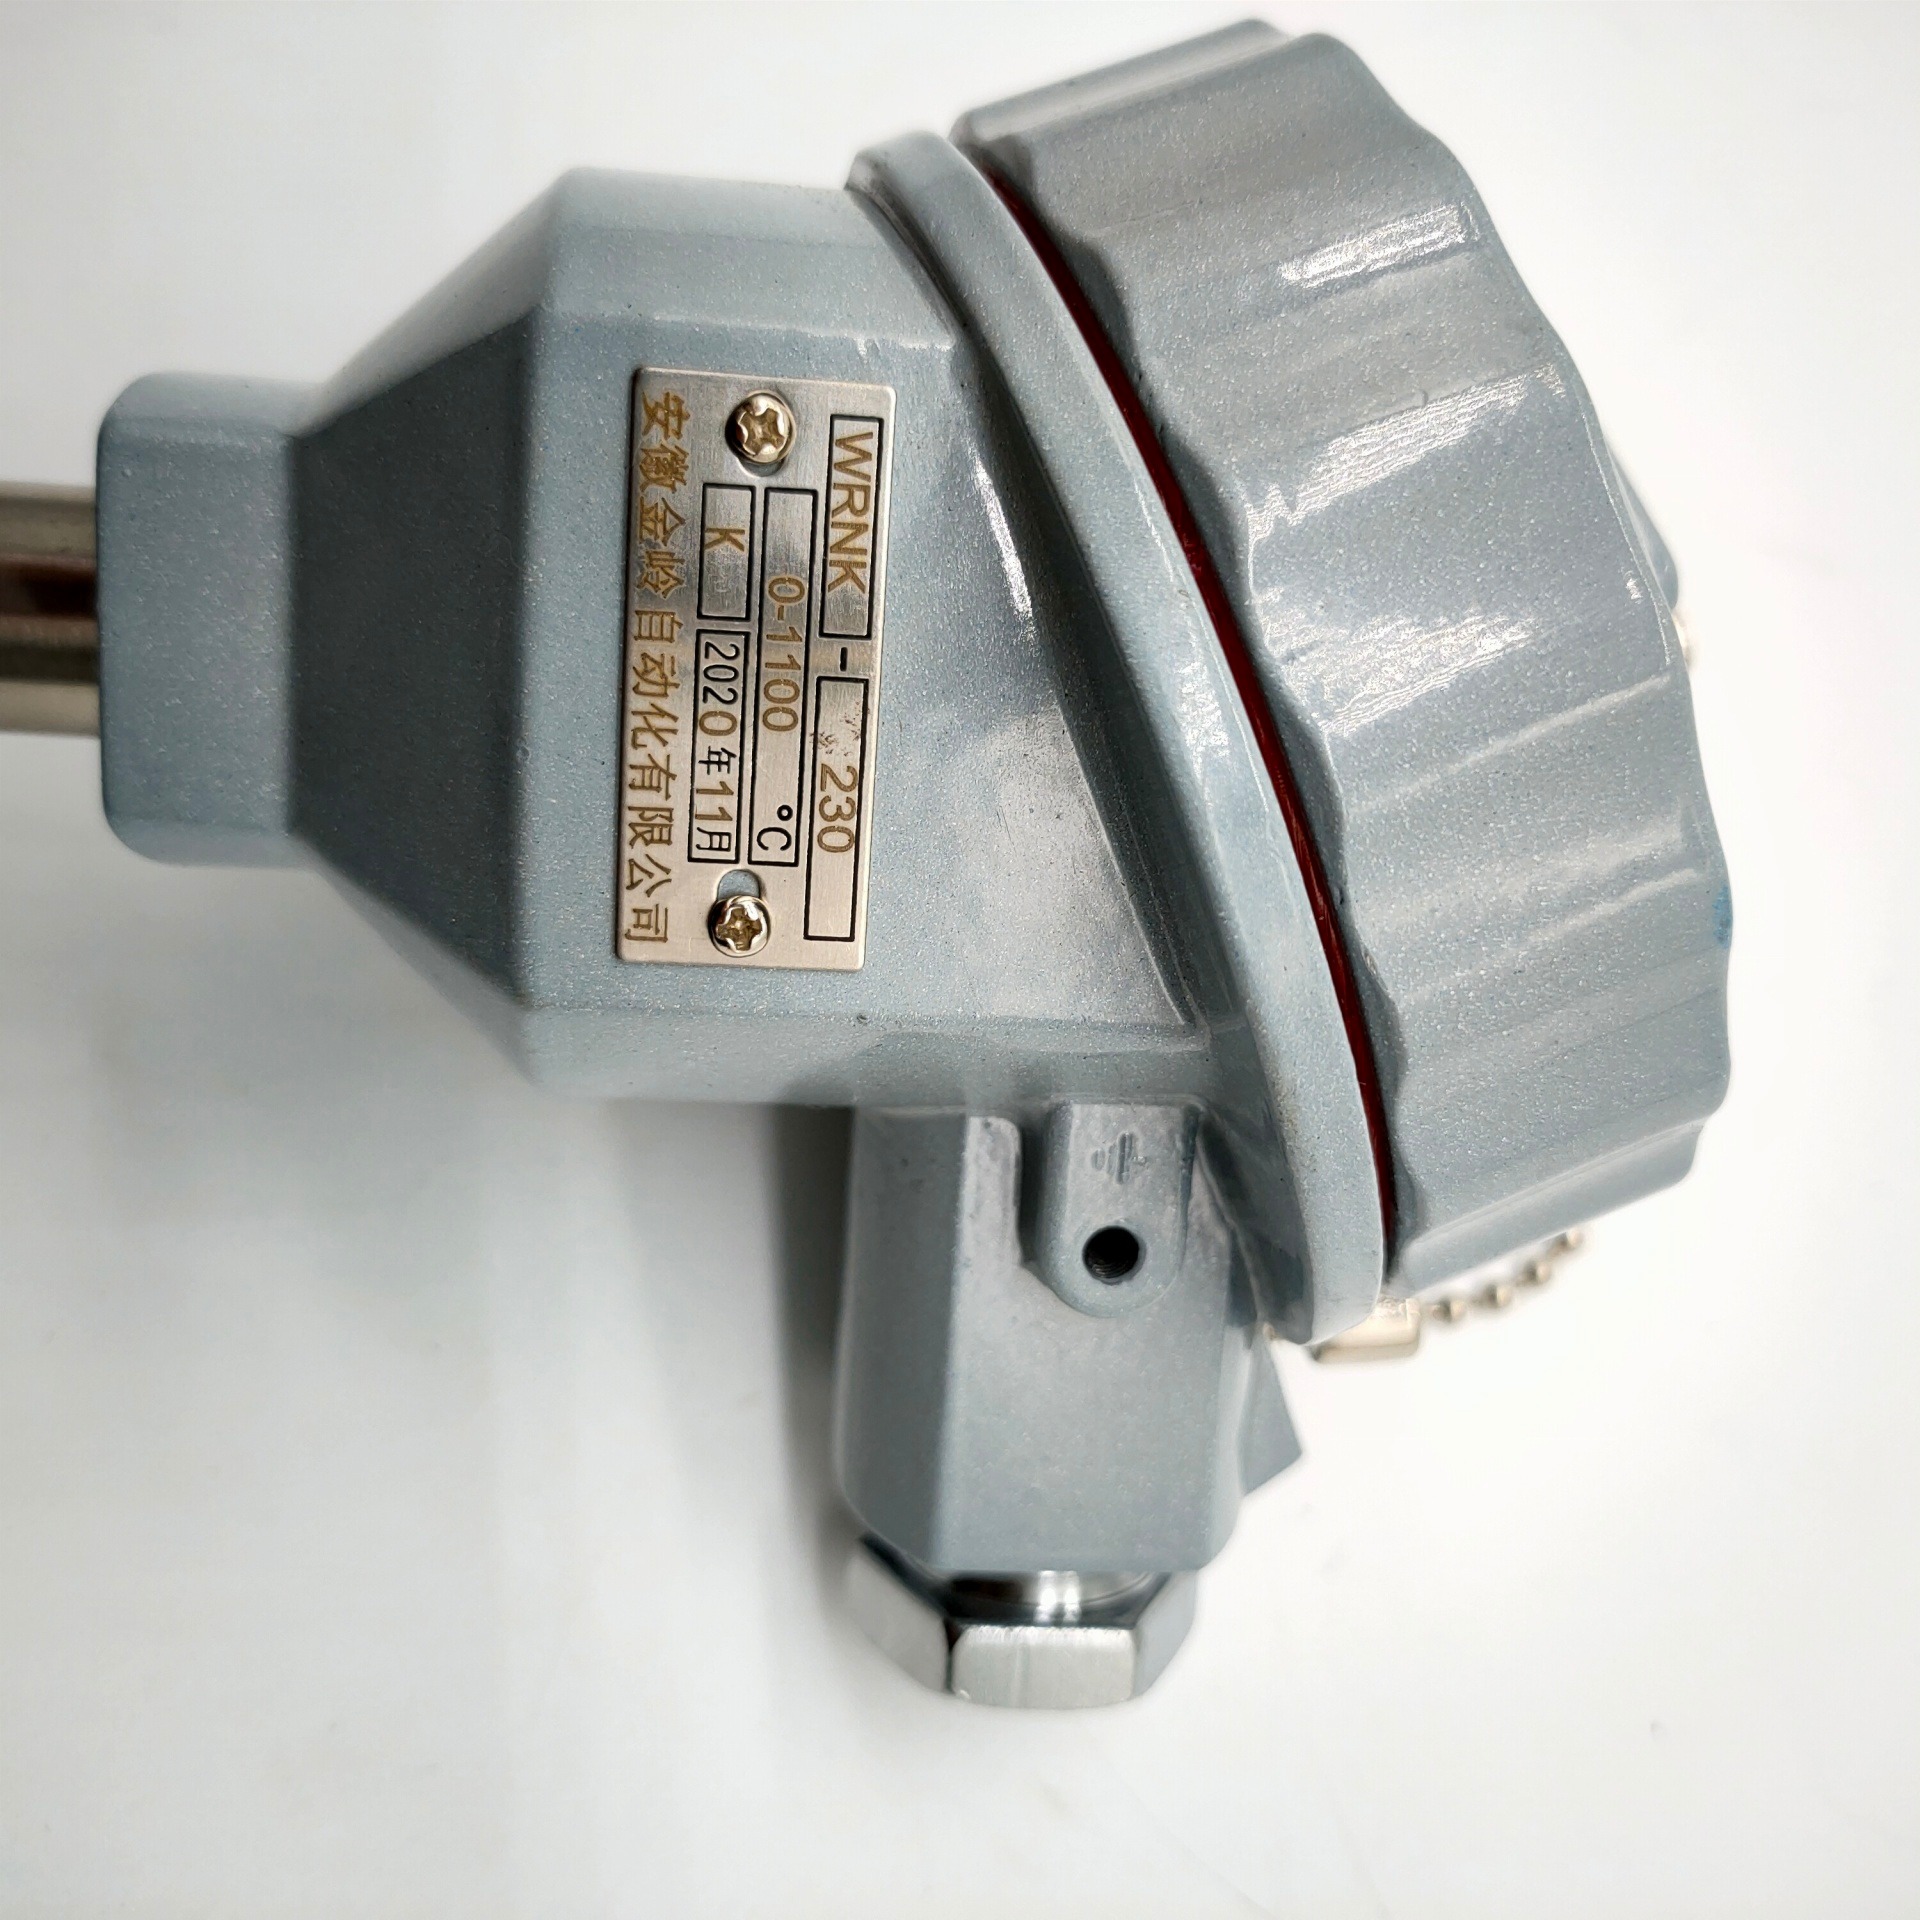 固定螺纹 3039材料 直形管接头式 金岭 JL-WRN-230 耐磨热电偶